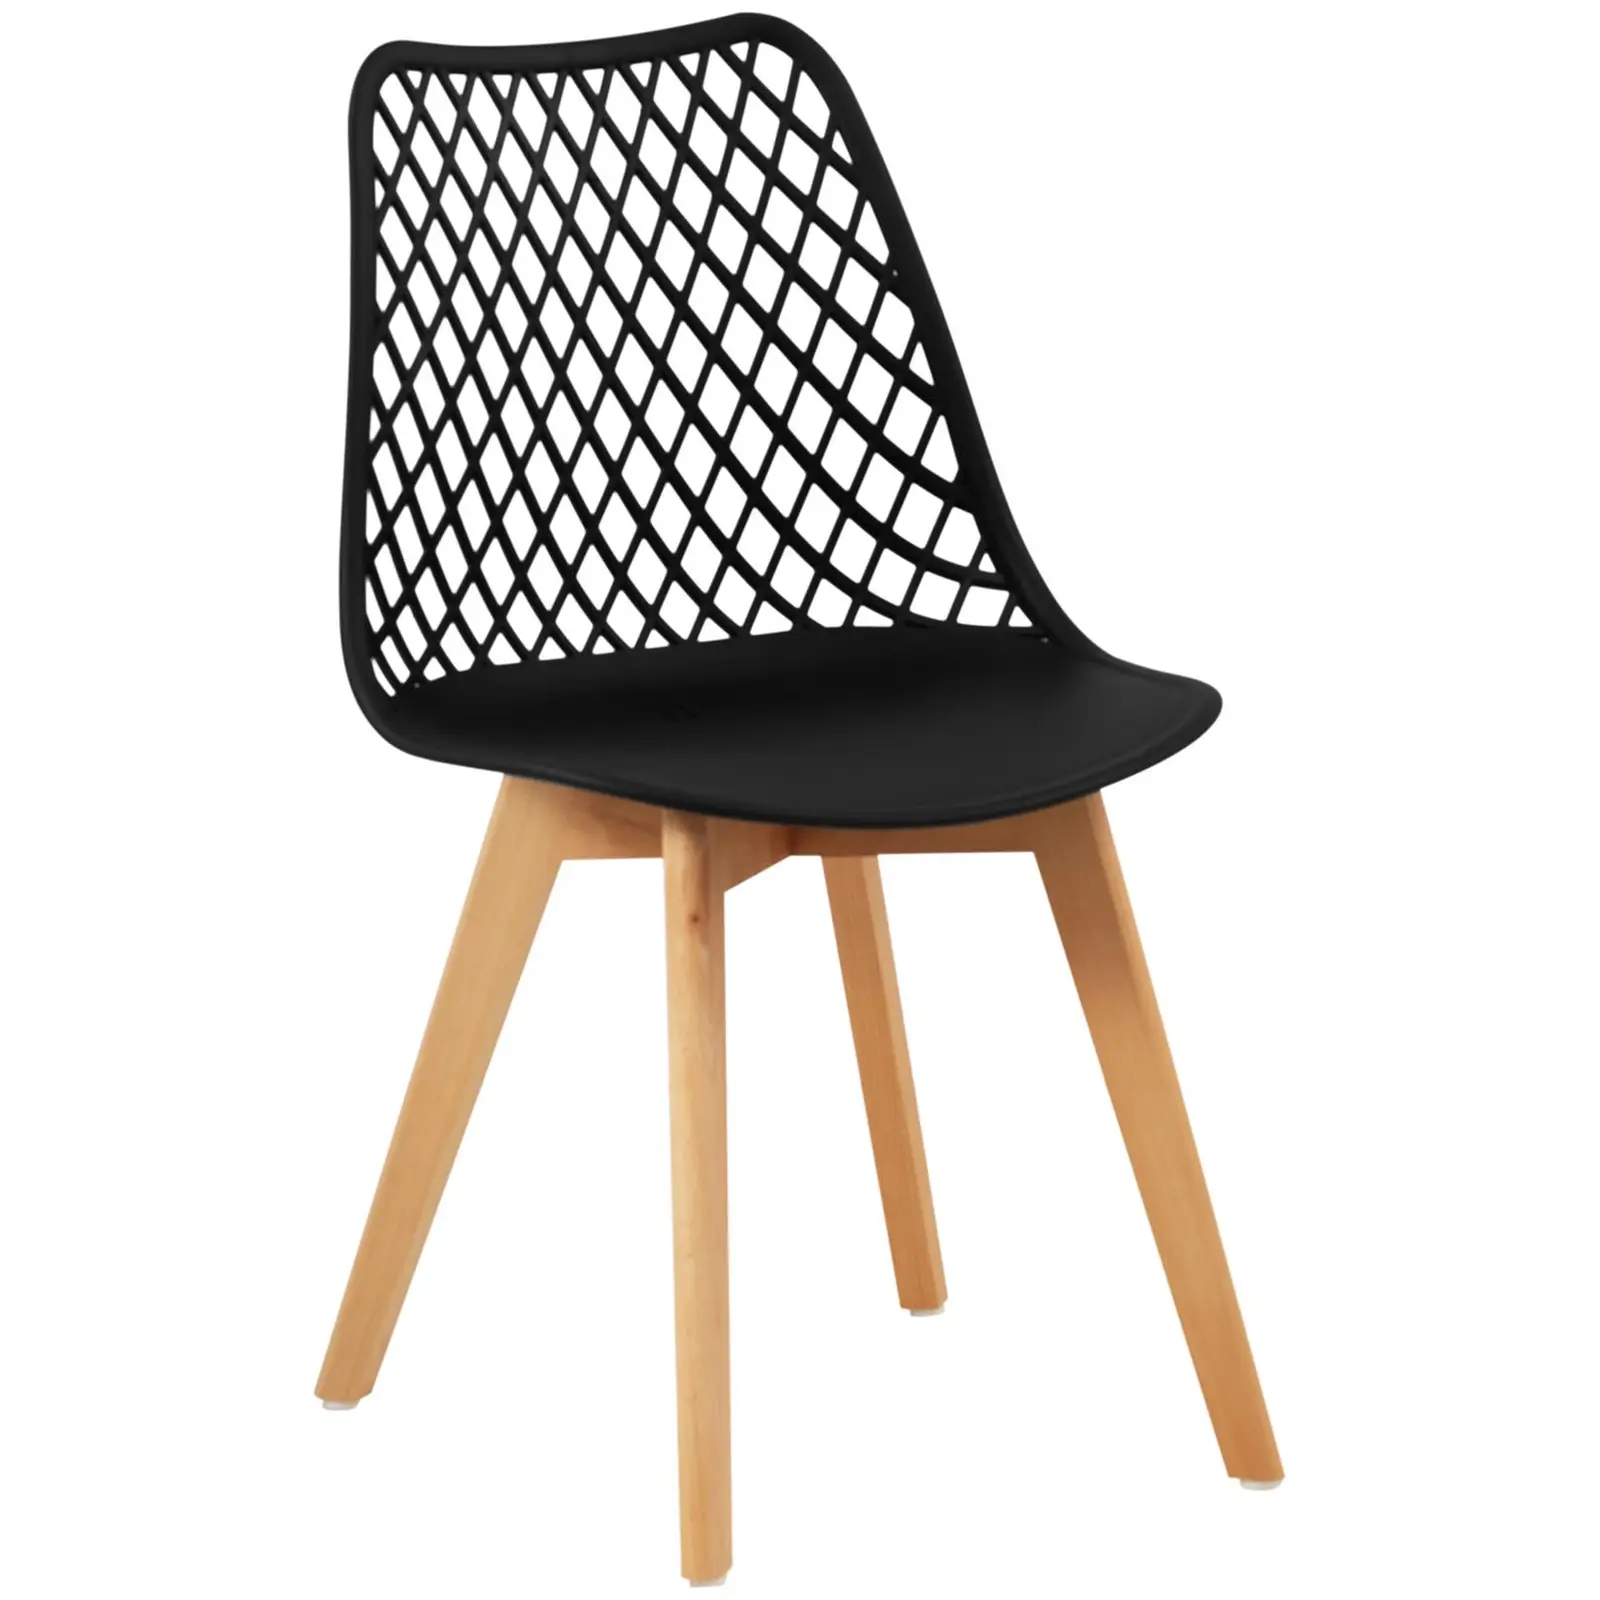 Chaise - Lot de 4 - 150 kg max. - Surface d'assise de 470 x 390 x 430 mm - Coloris noir